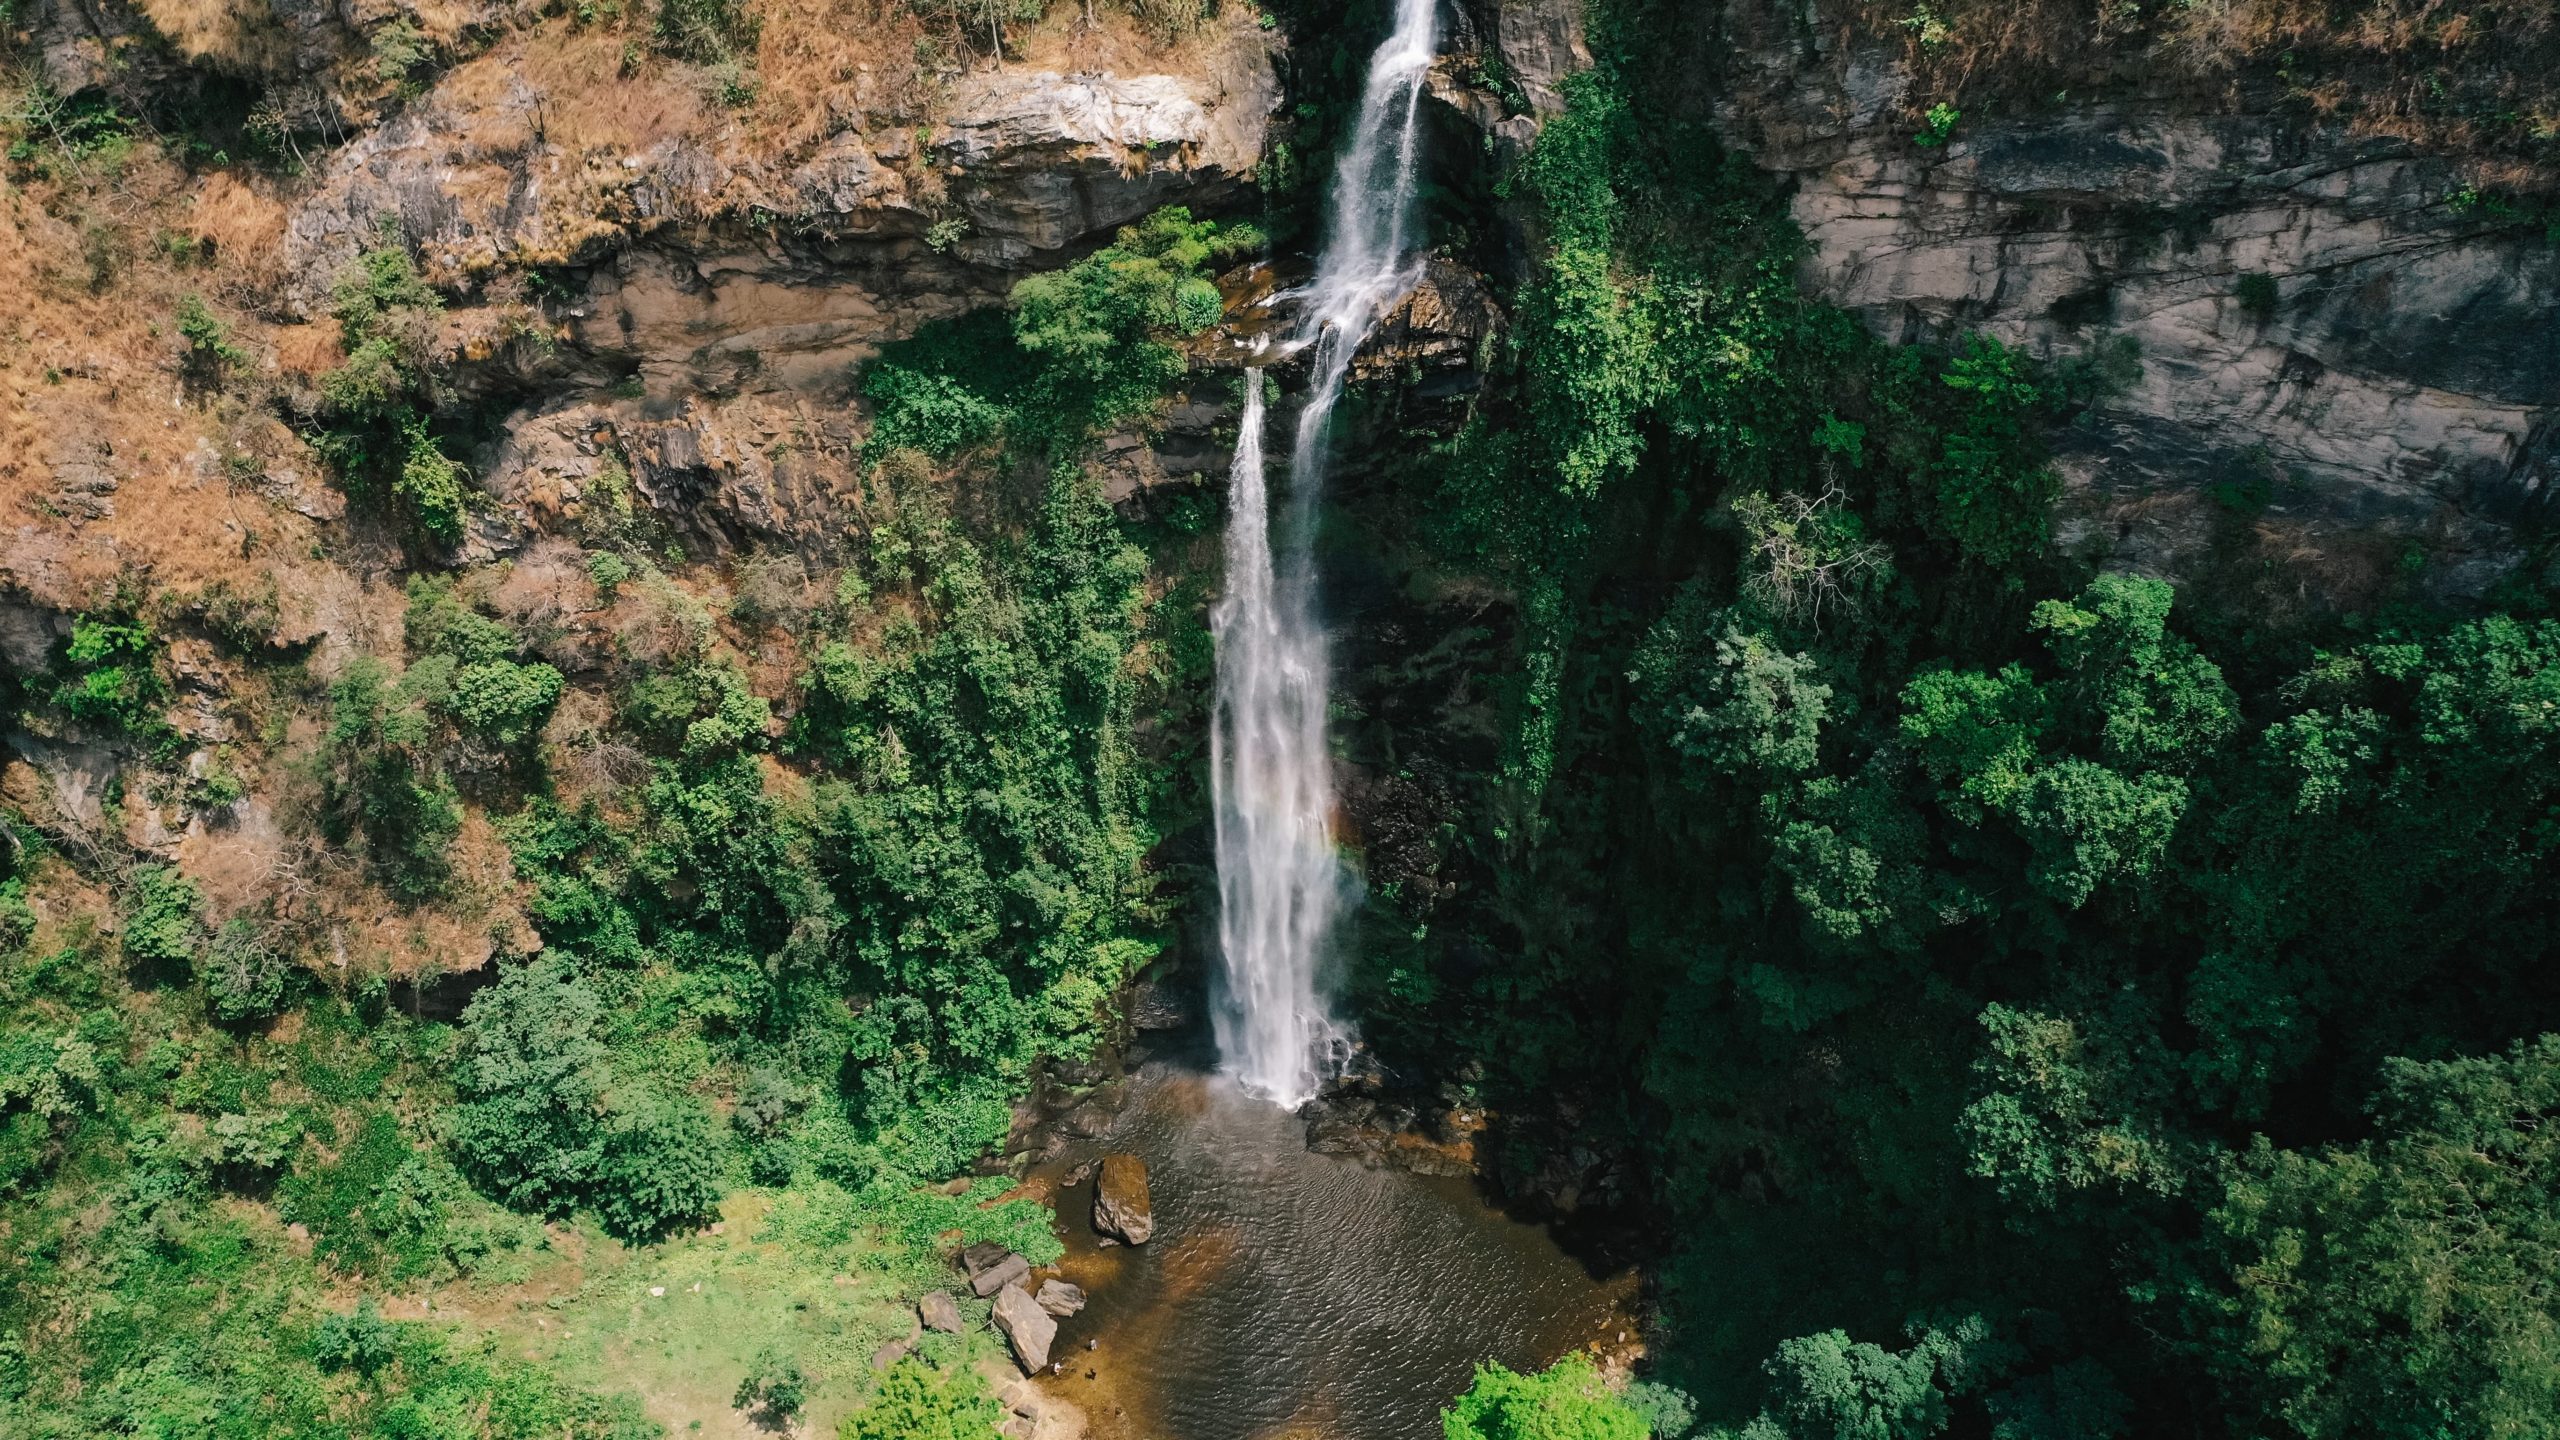  ghana wli waterfalls que faire